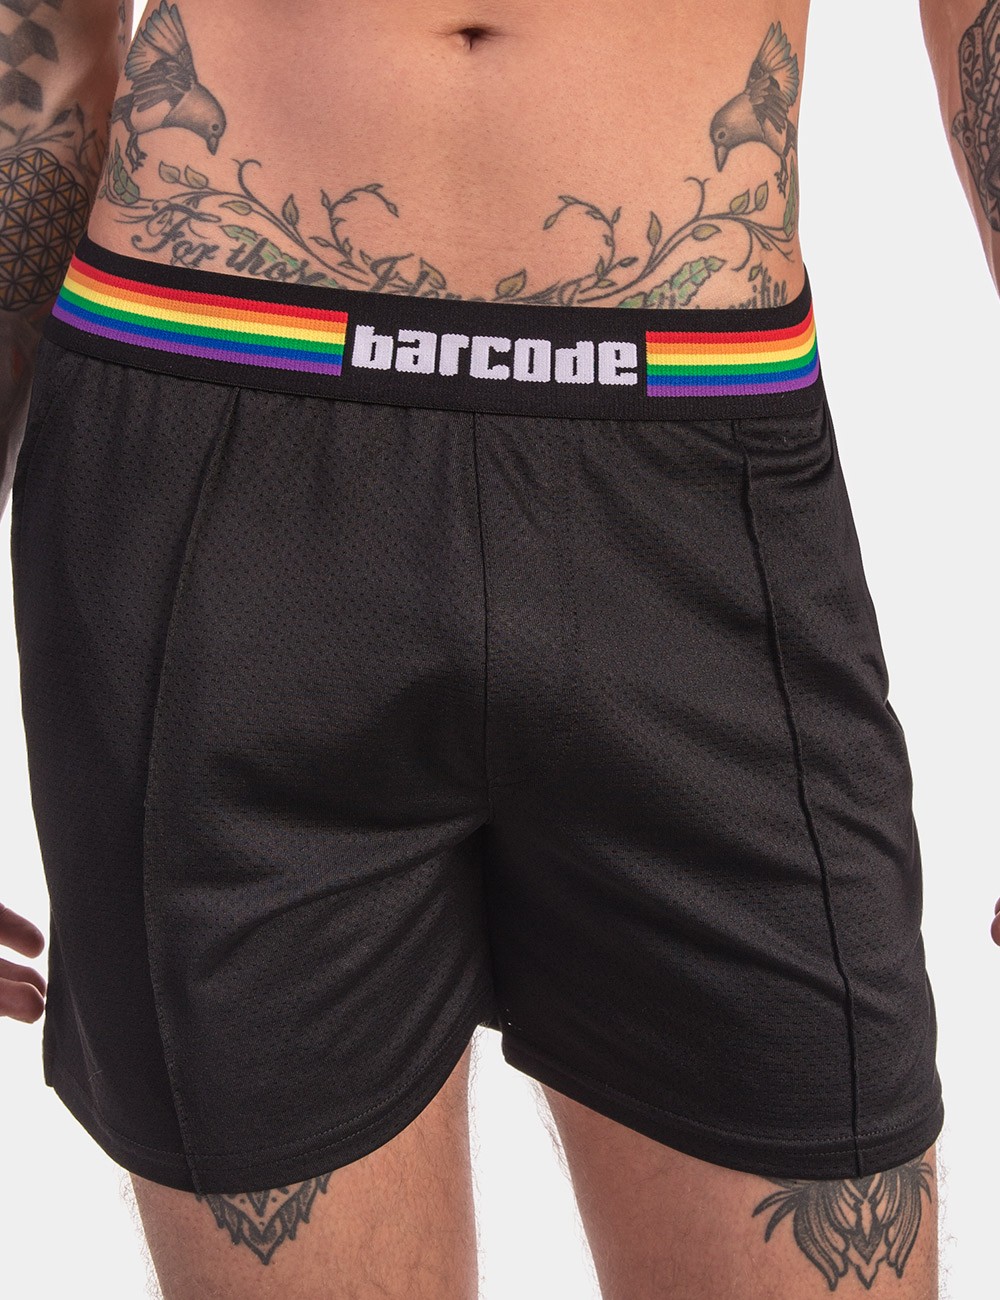 Pride Short von Barcode Berlin Model " Pride 4ever" Gay Fashion 